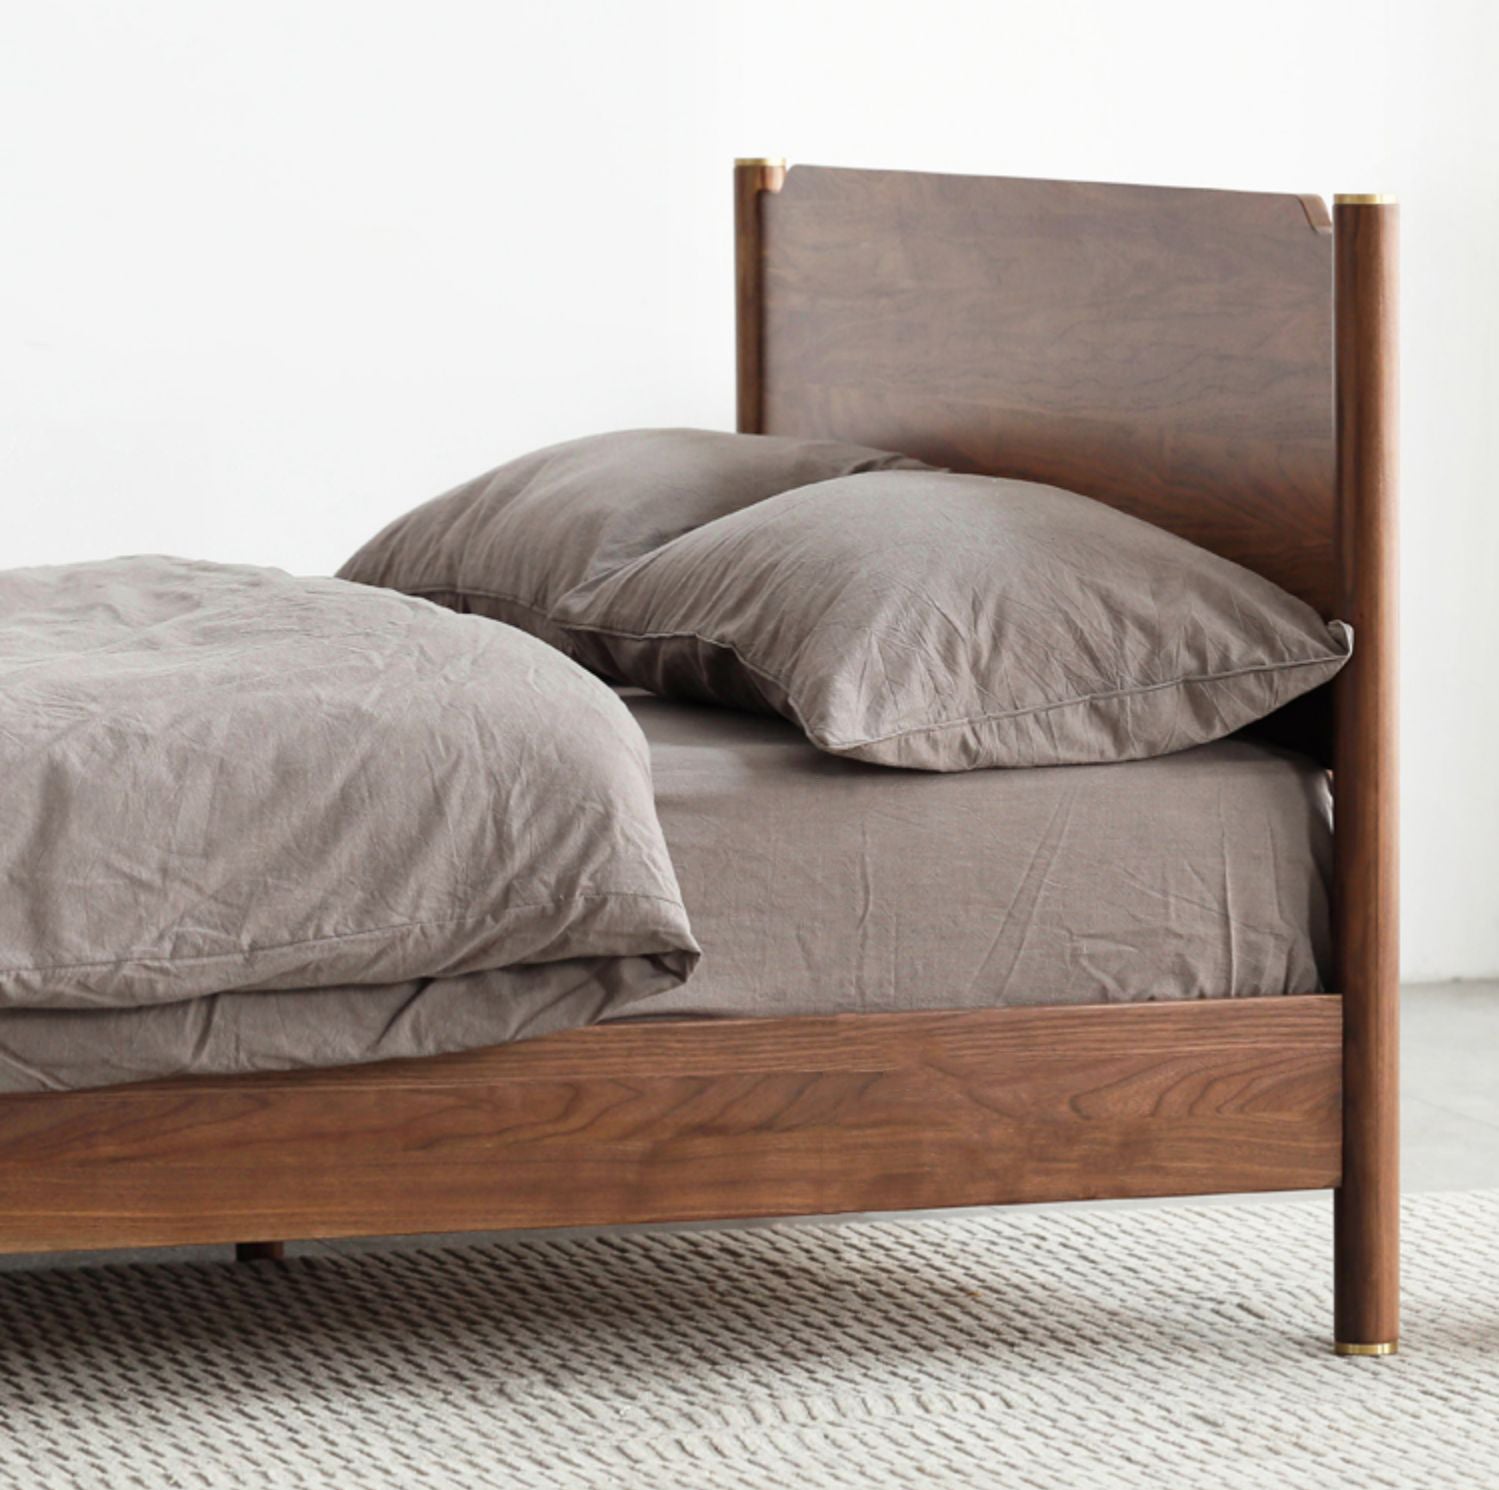 سرير ملكي من خشب الجوز الصلب، سرير مغزلي من خشب الجوز، سرير من خشب الجوز